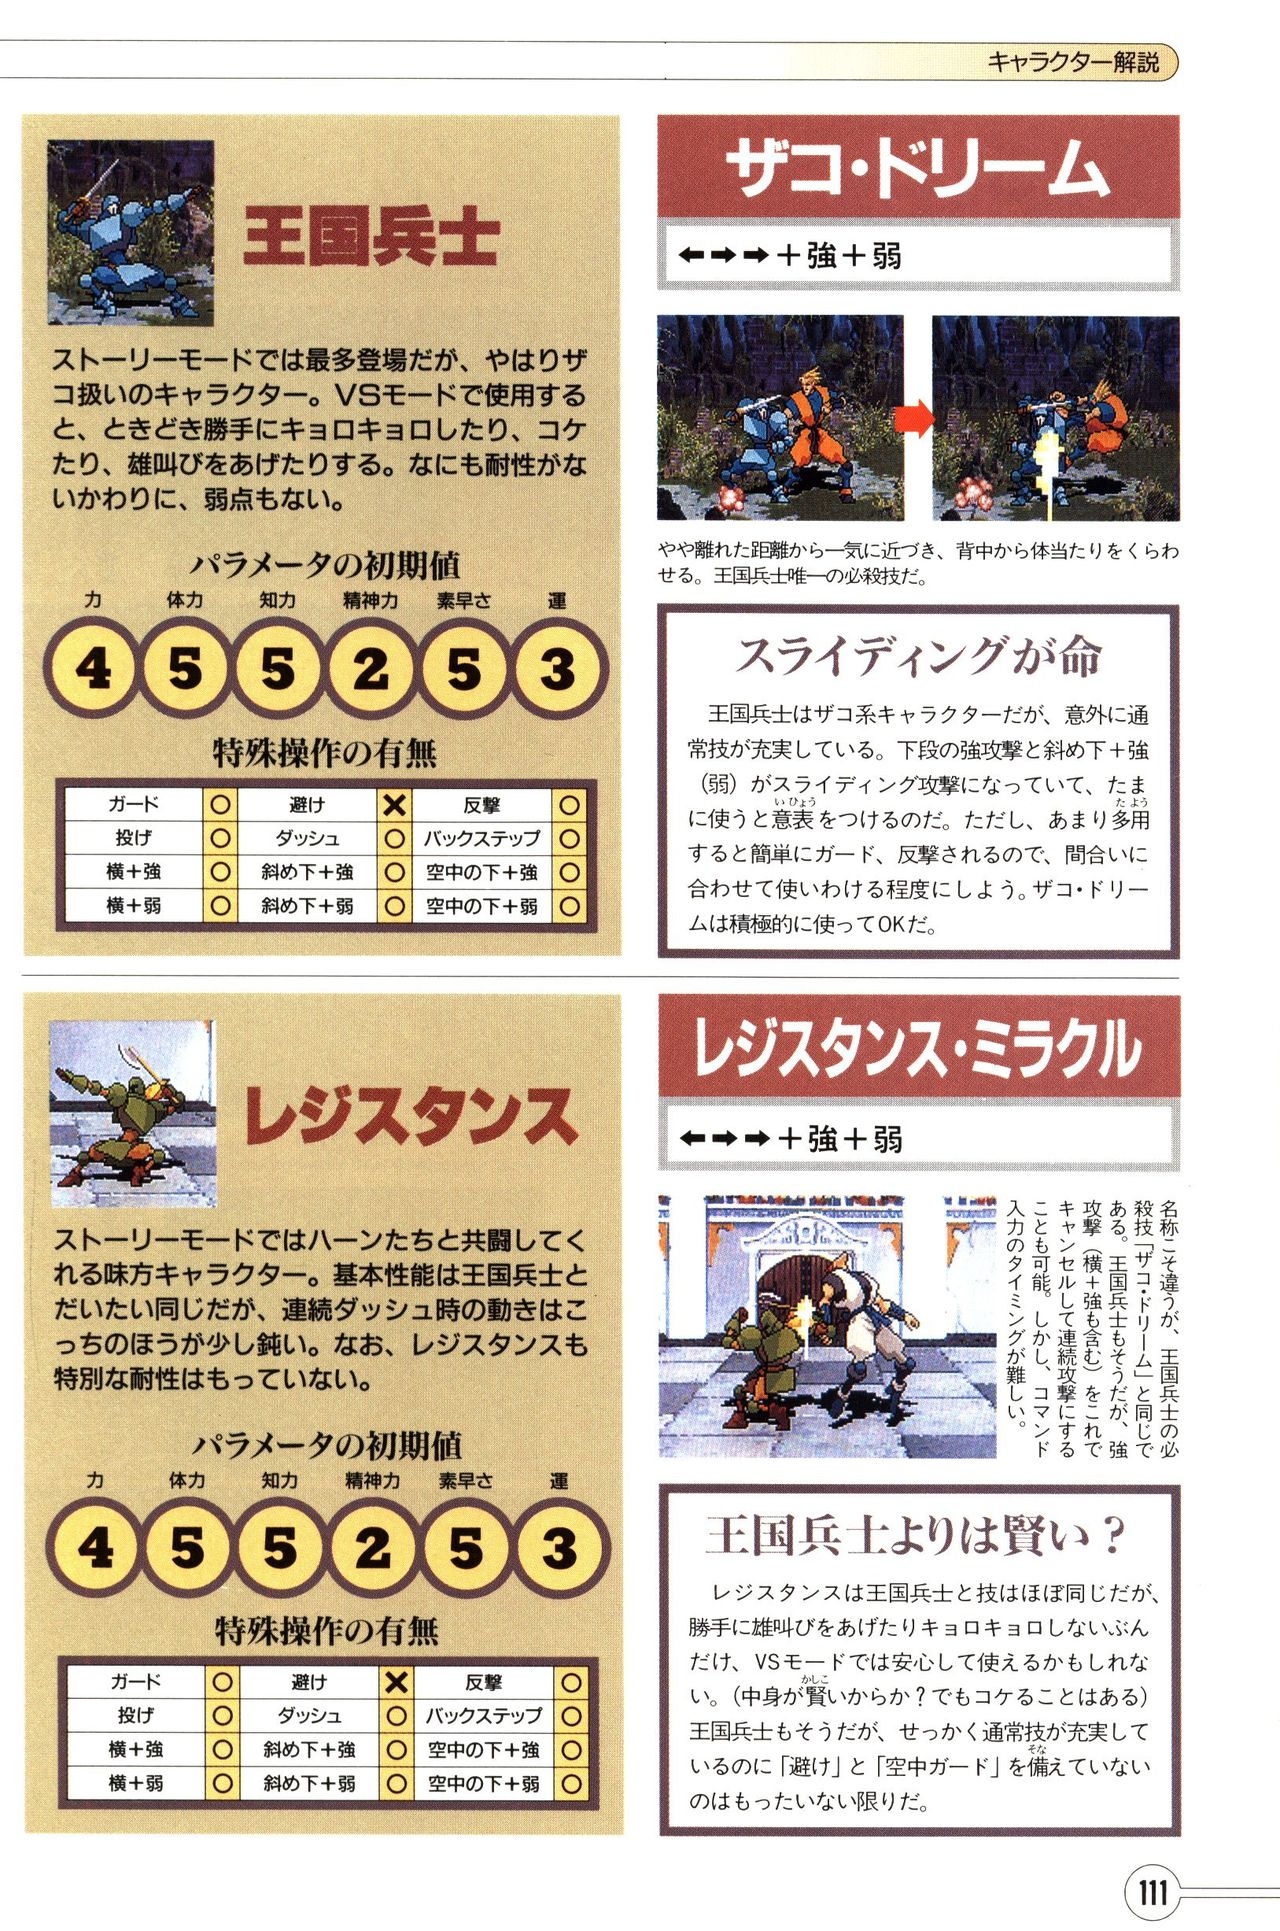 Guardian Heroes Perfect Guide (Sega Saturn magazine books) 113